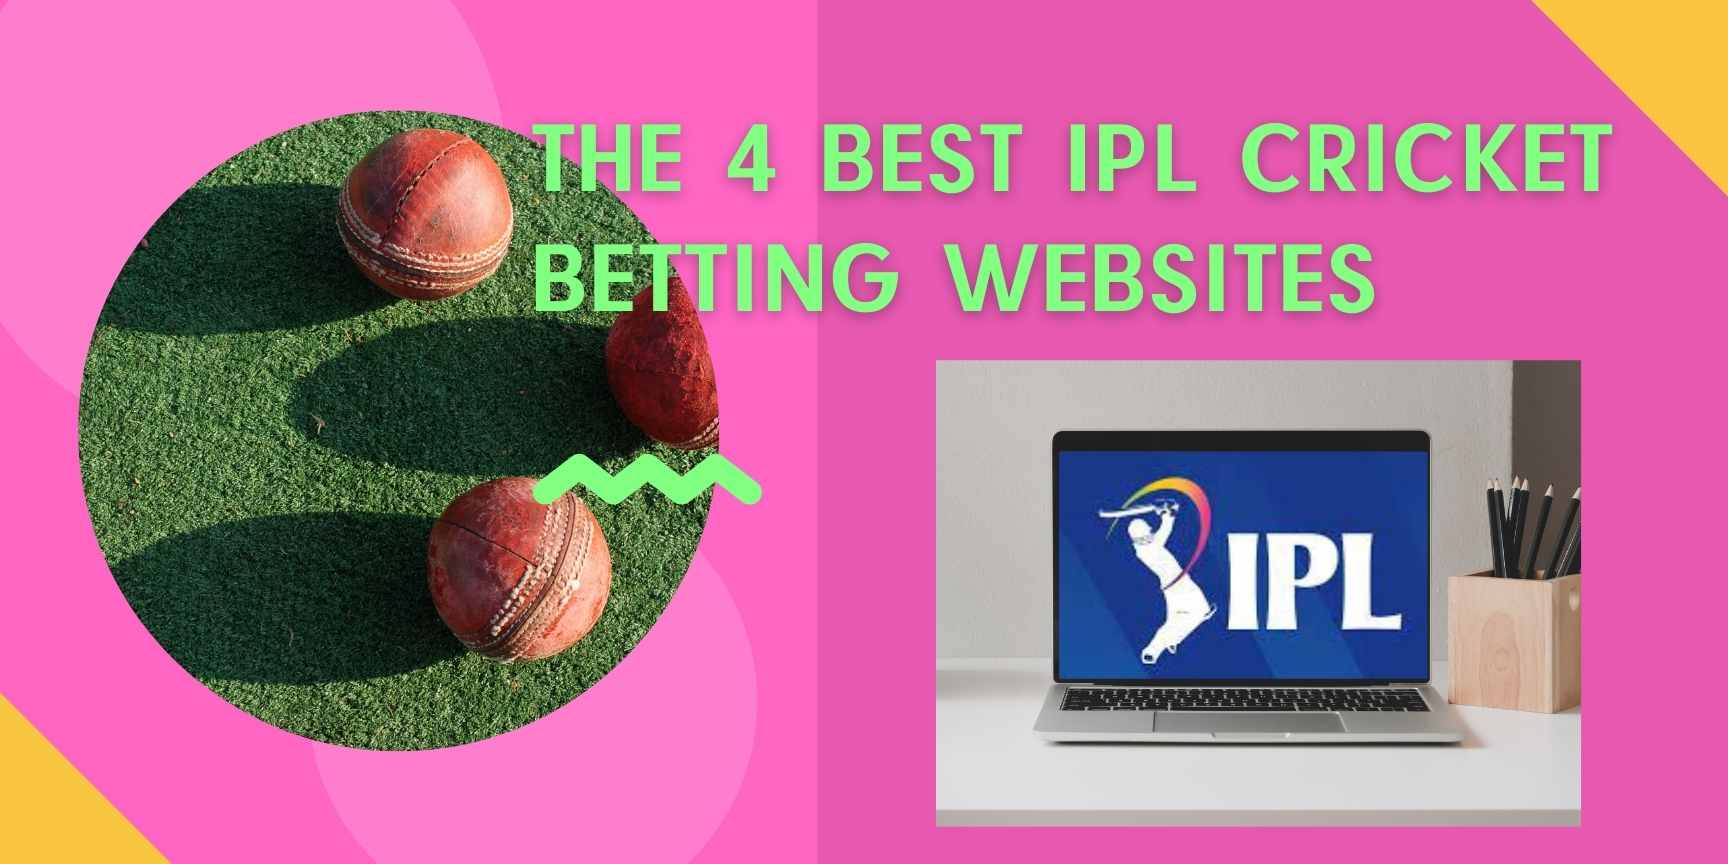 The 4 best IPL cricket betting websites